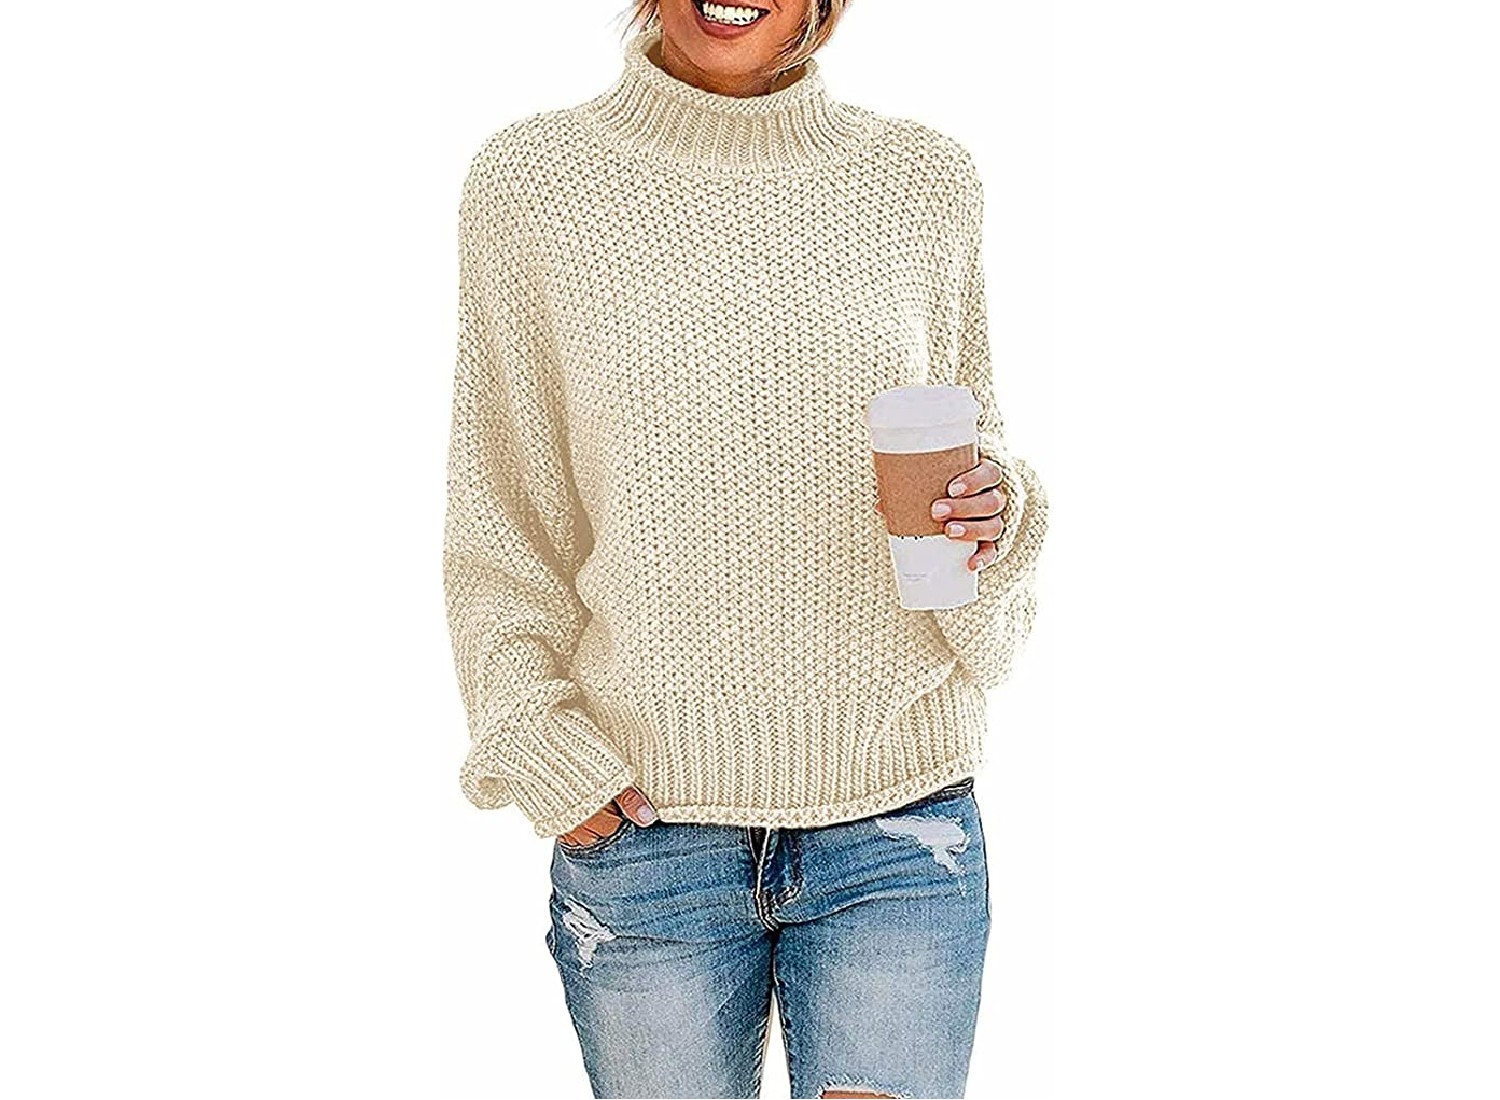 A cream colored sweater.